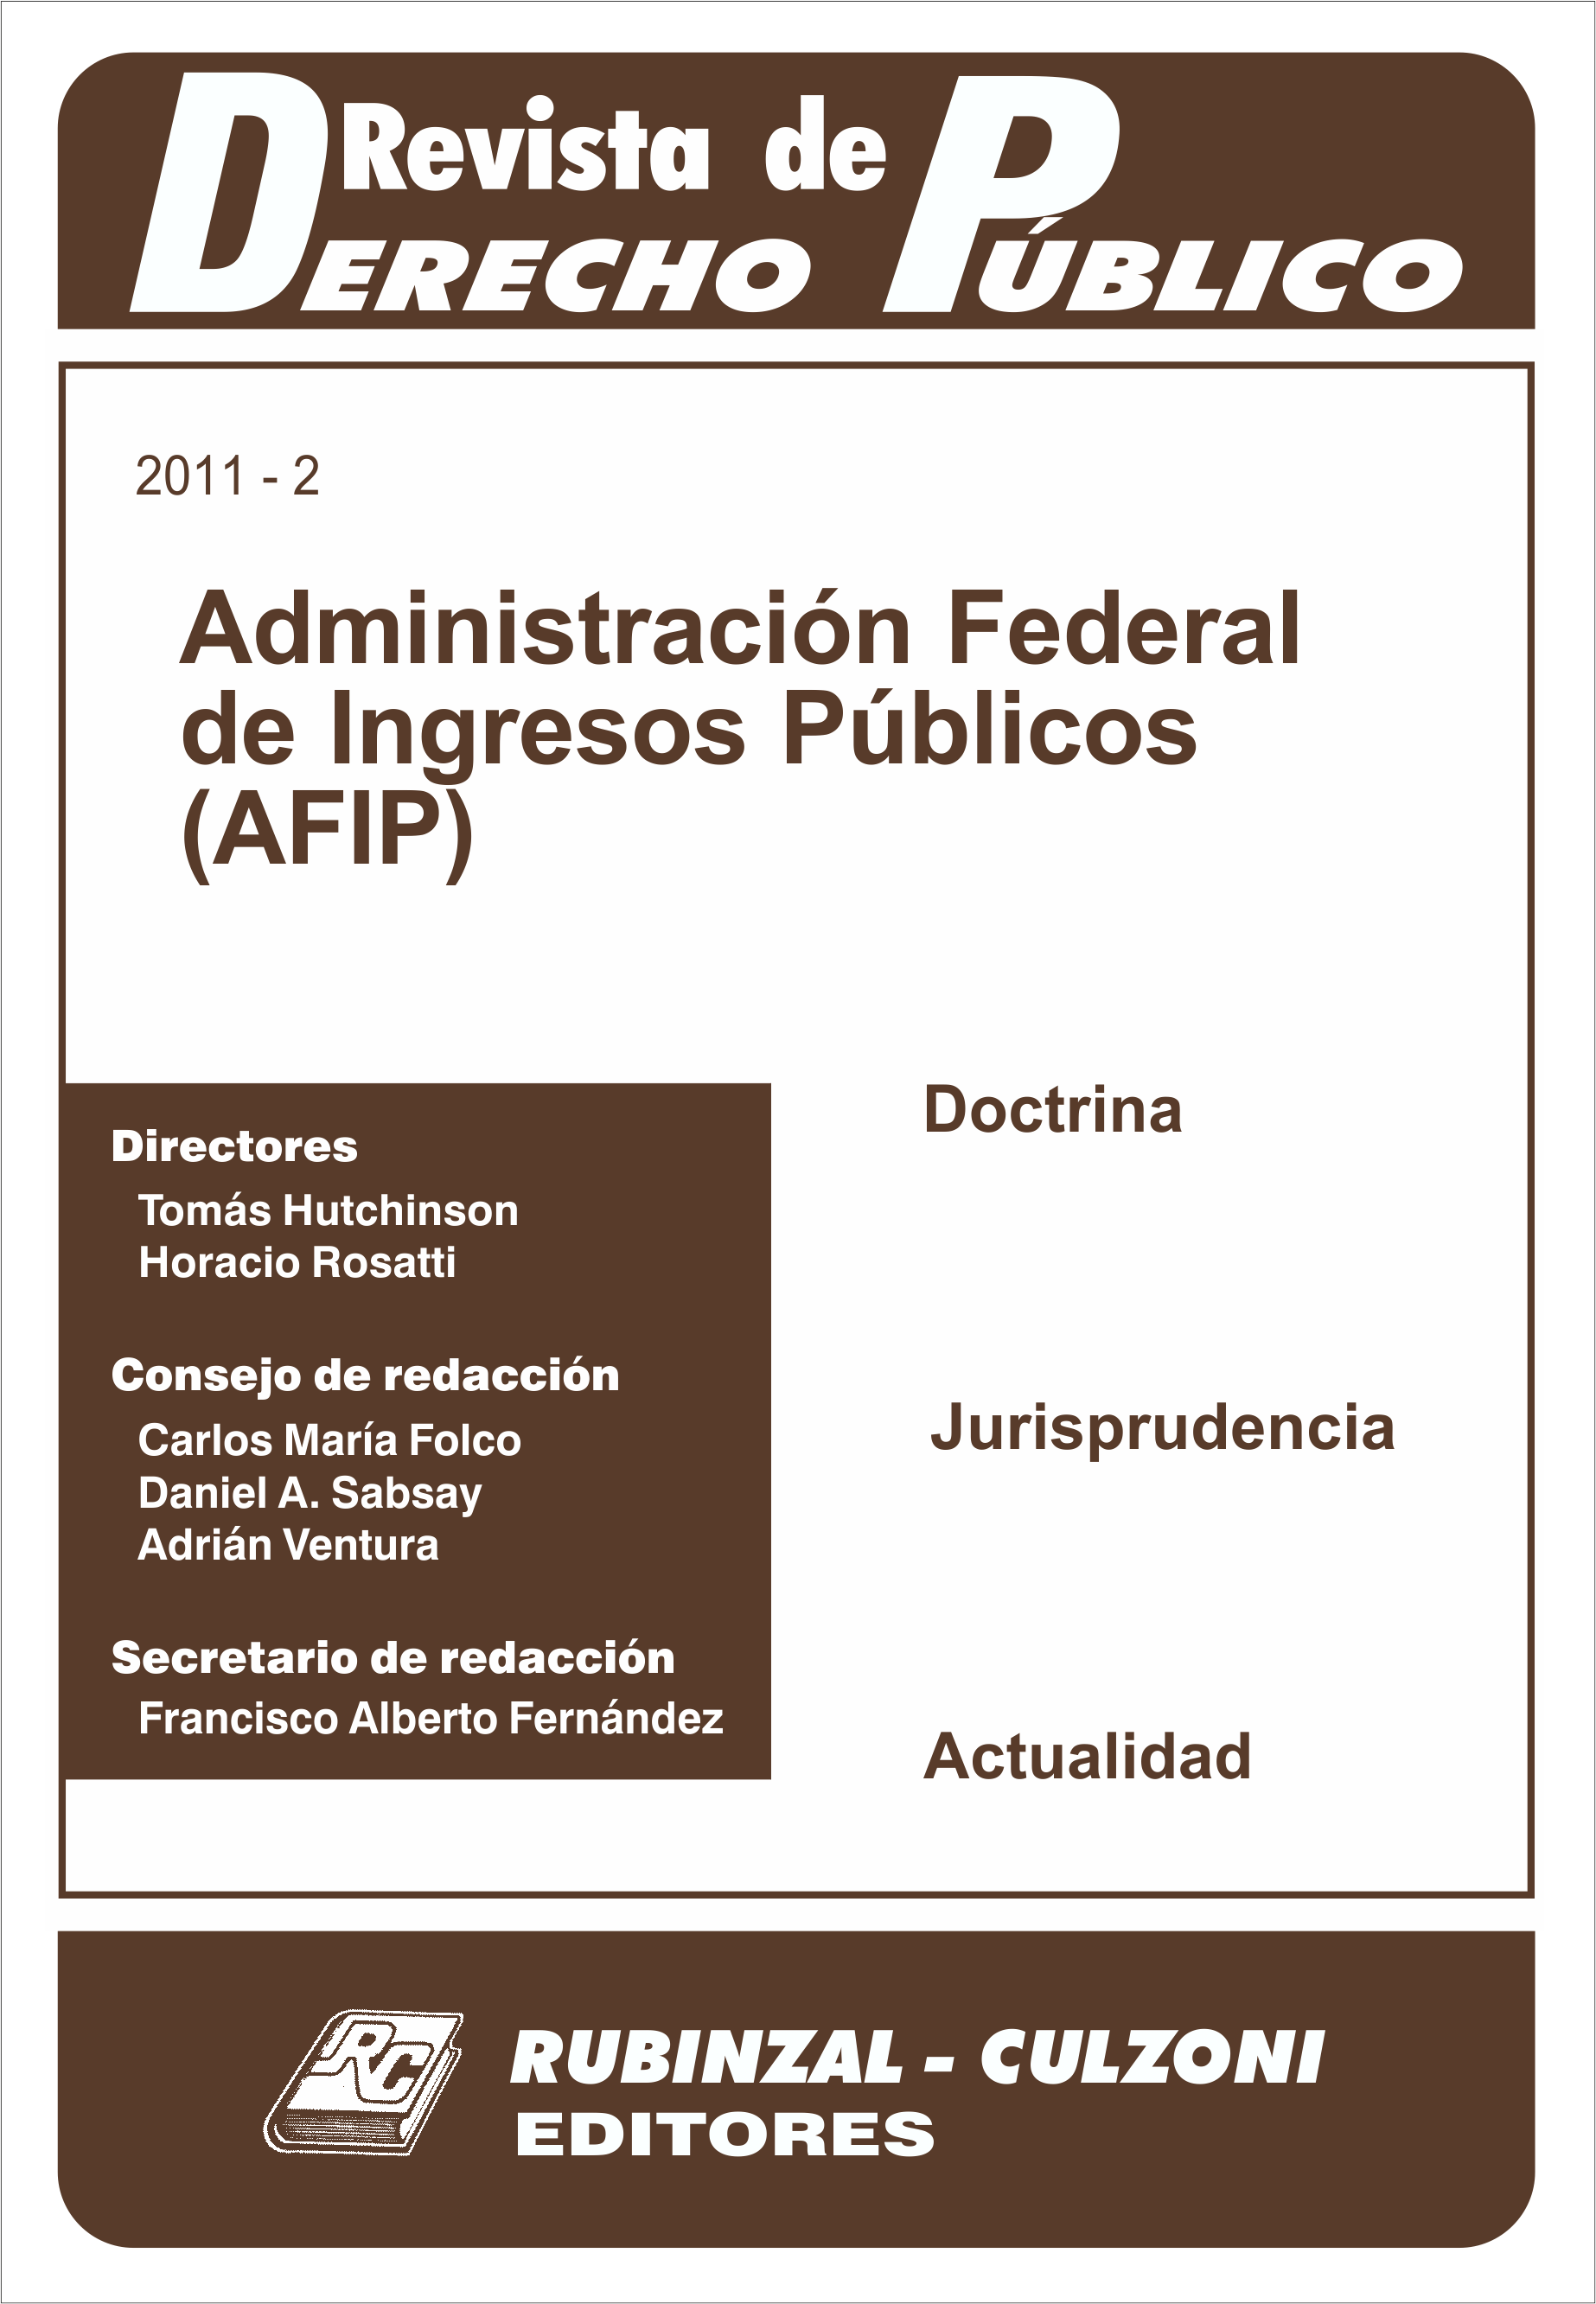 Revista de Derecho Público - Administración Federal de Ingresos Públicos (AFIP)